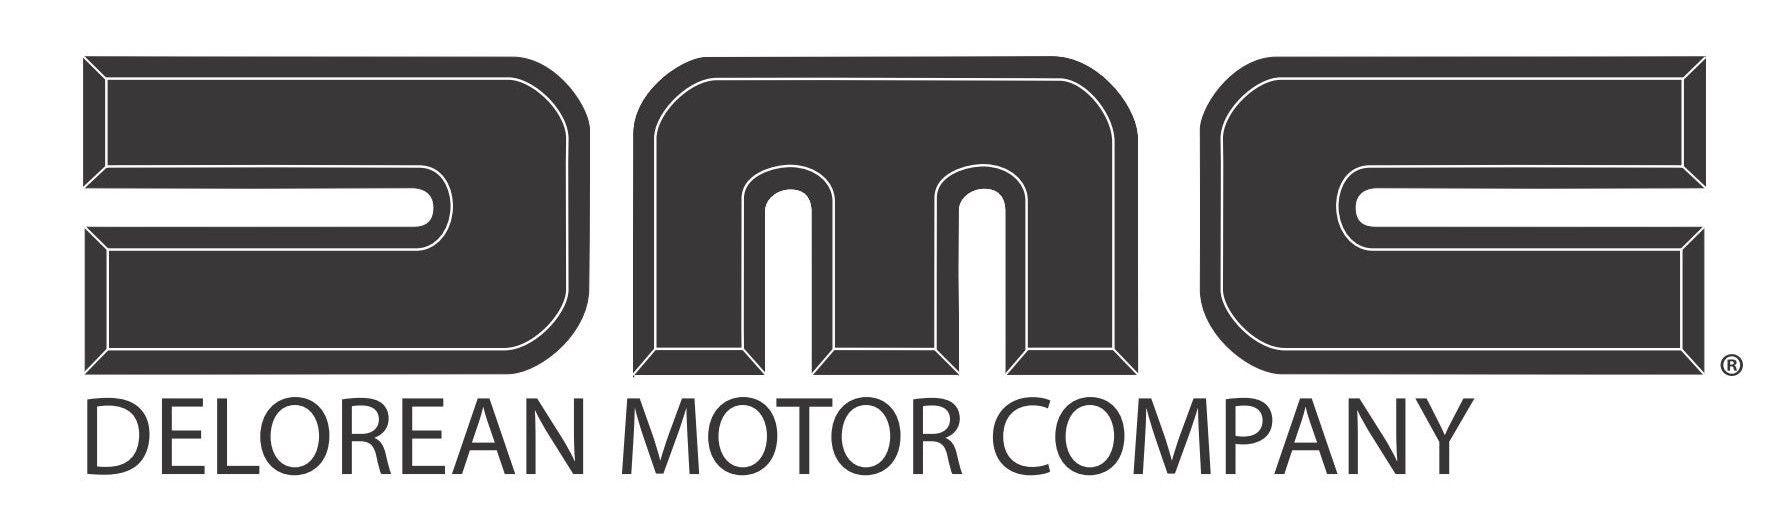 DeLorean Logo - DeLorean Motor Company Logo Free Vector Download - FreeLogoVectors